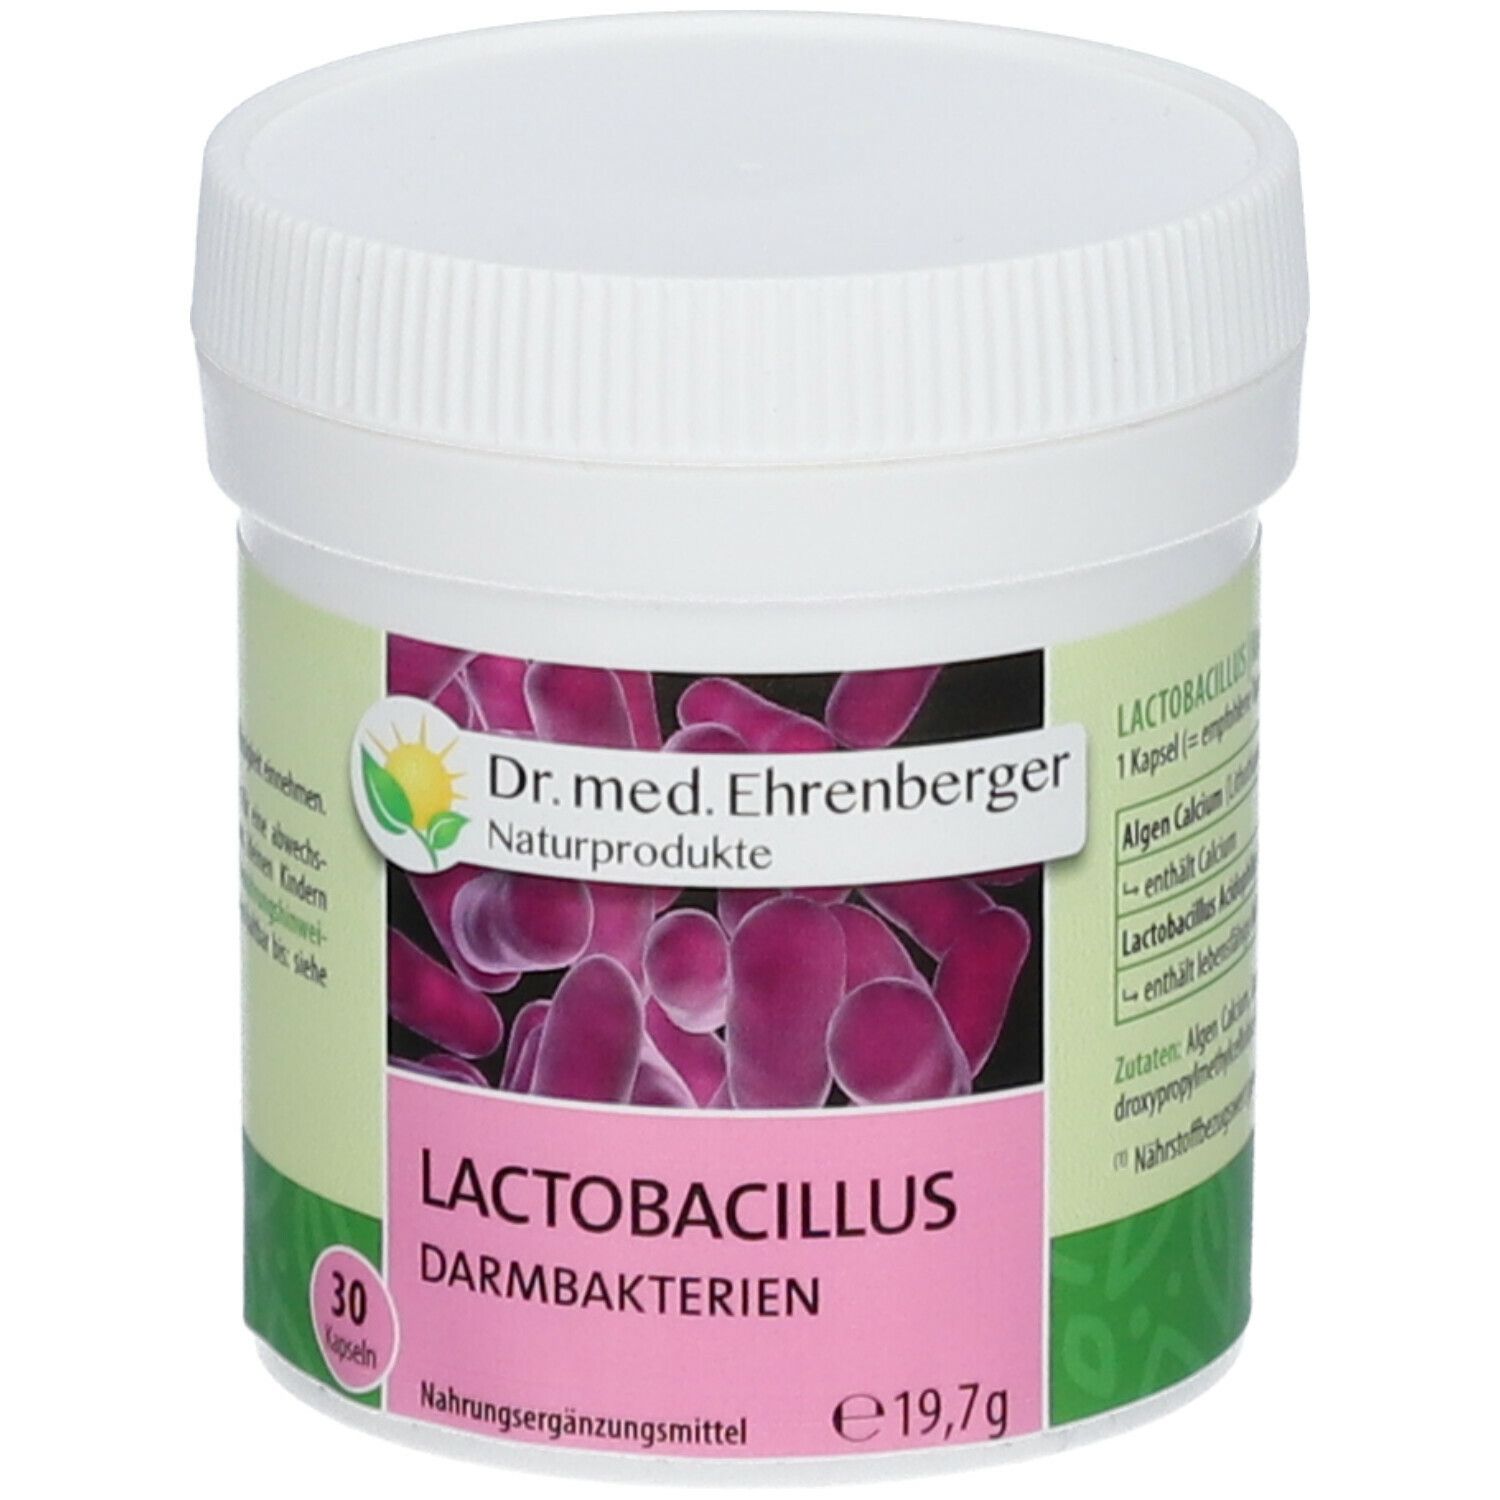 Dr. med. Ehrenberger Lactobacillus Darmbakterien